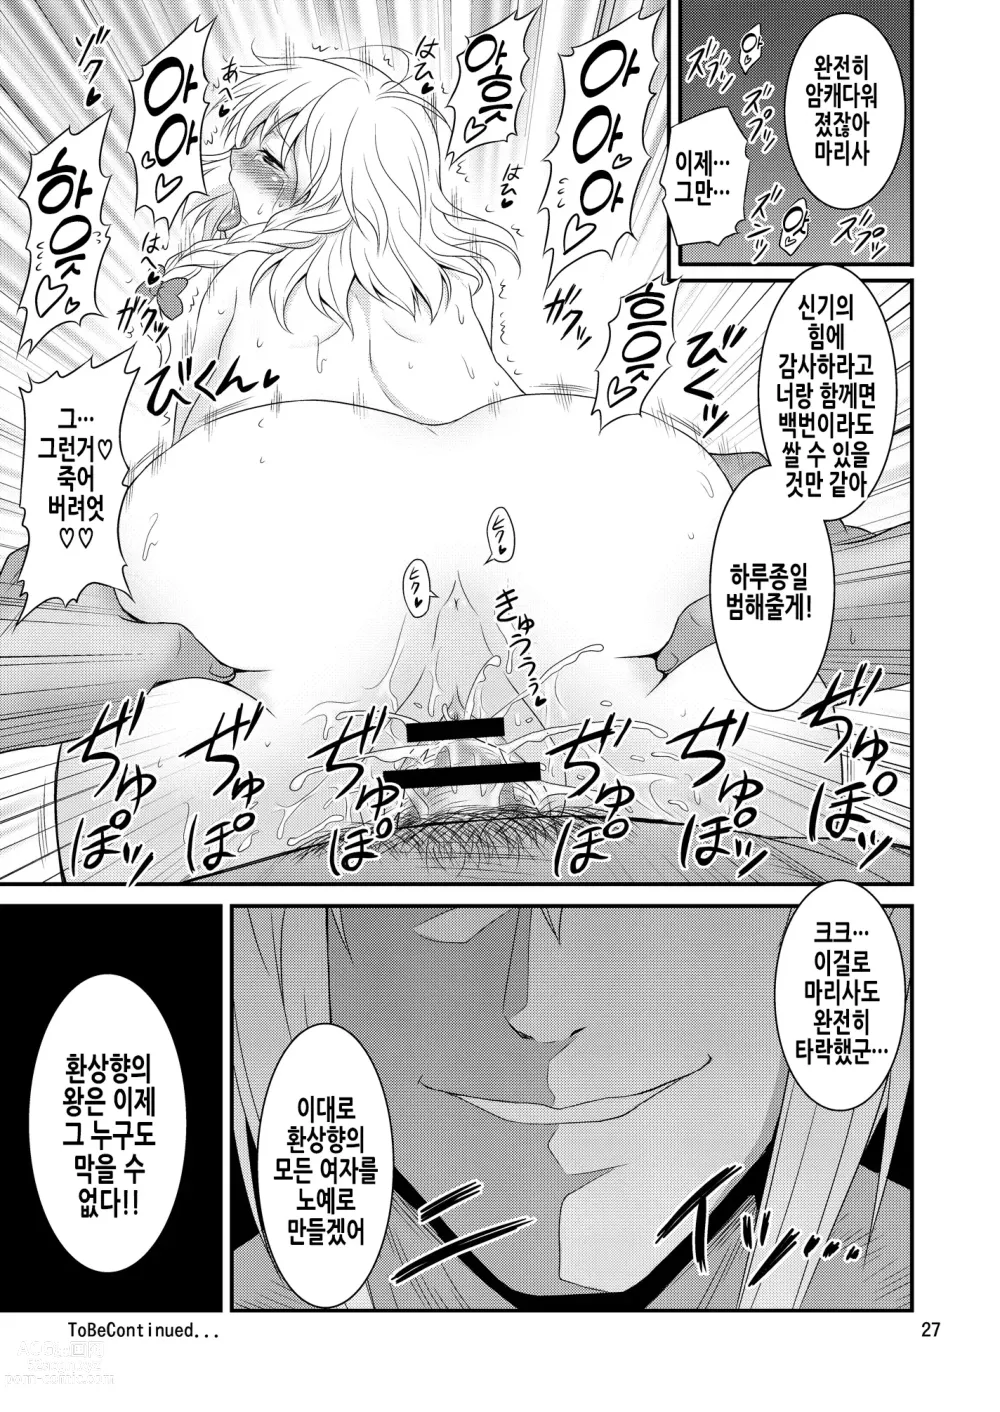 Page 28 of doujinshi 환상향의 왕 능욕편